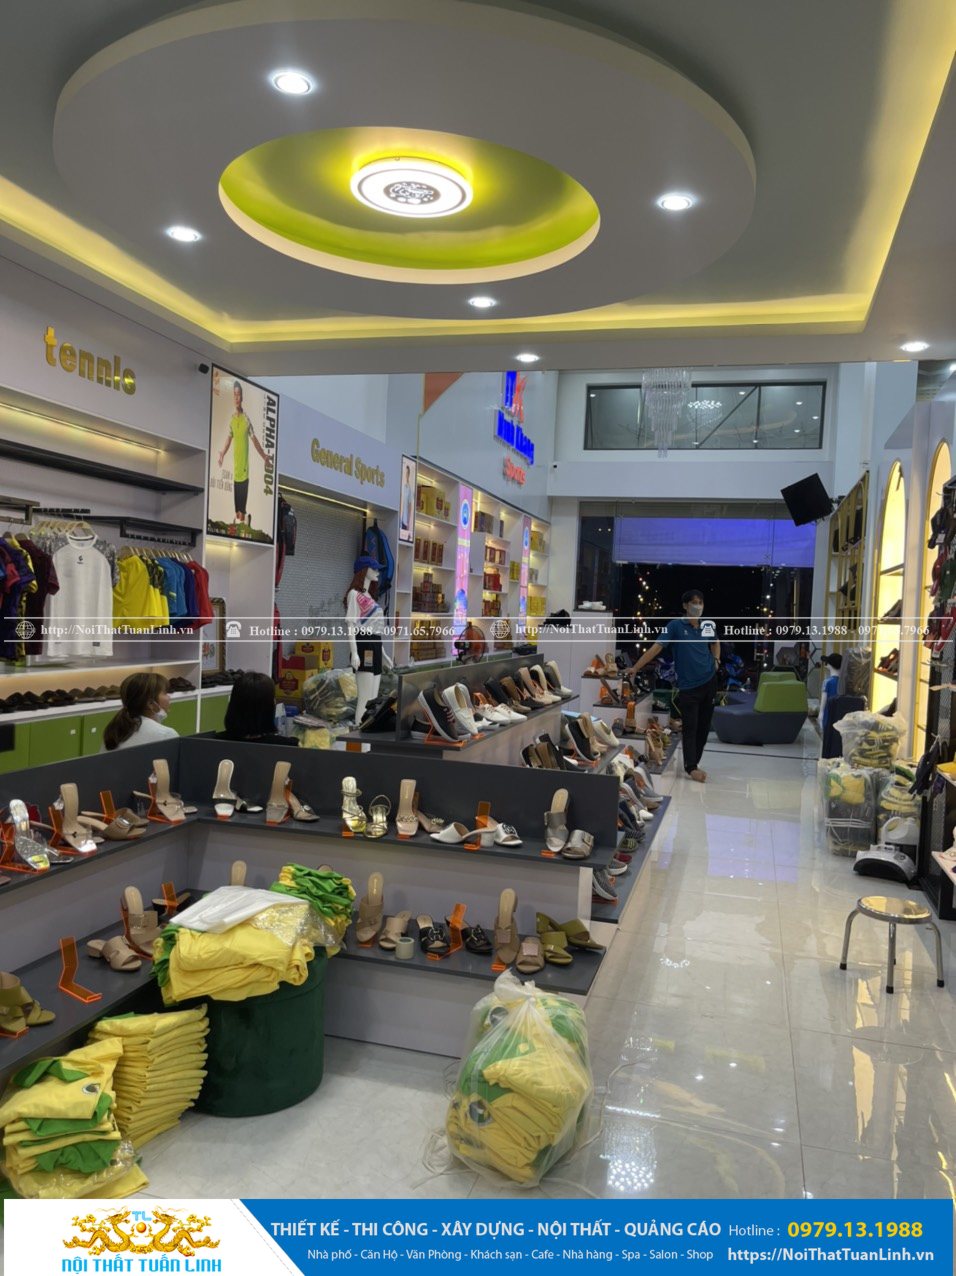 Báo giá thiết kế thi công nội thất shop thời trang Minh Khang Sport tại Phú Giáo Bình Dương 12